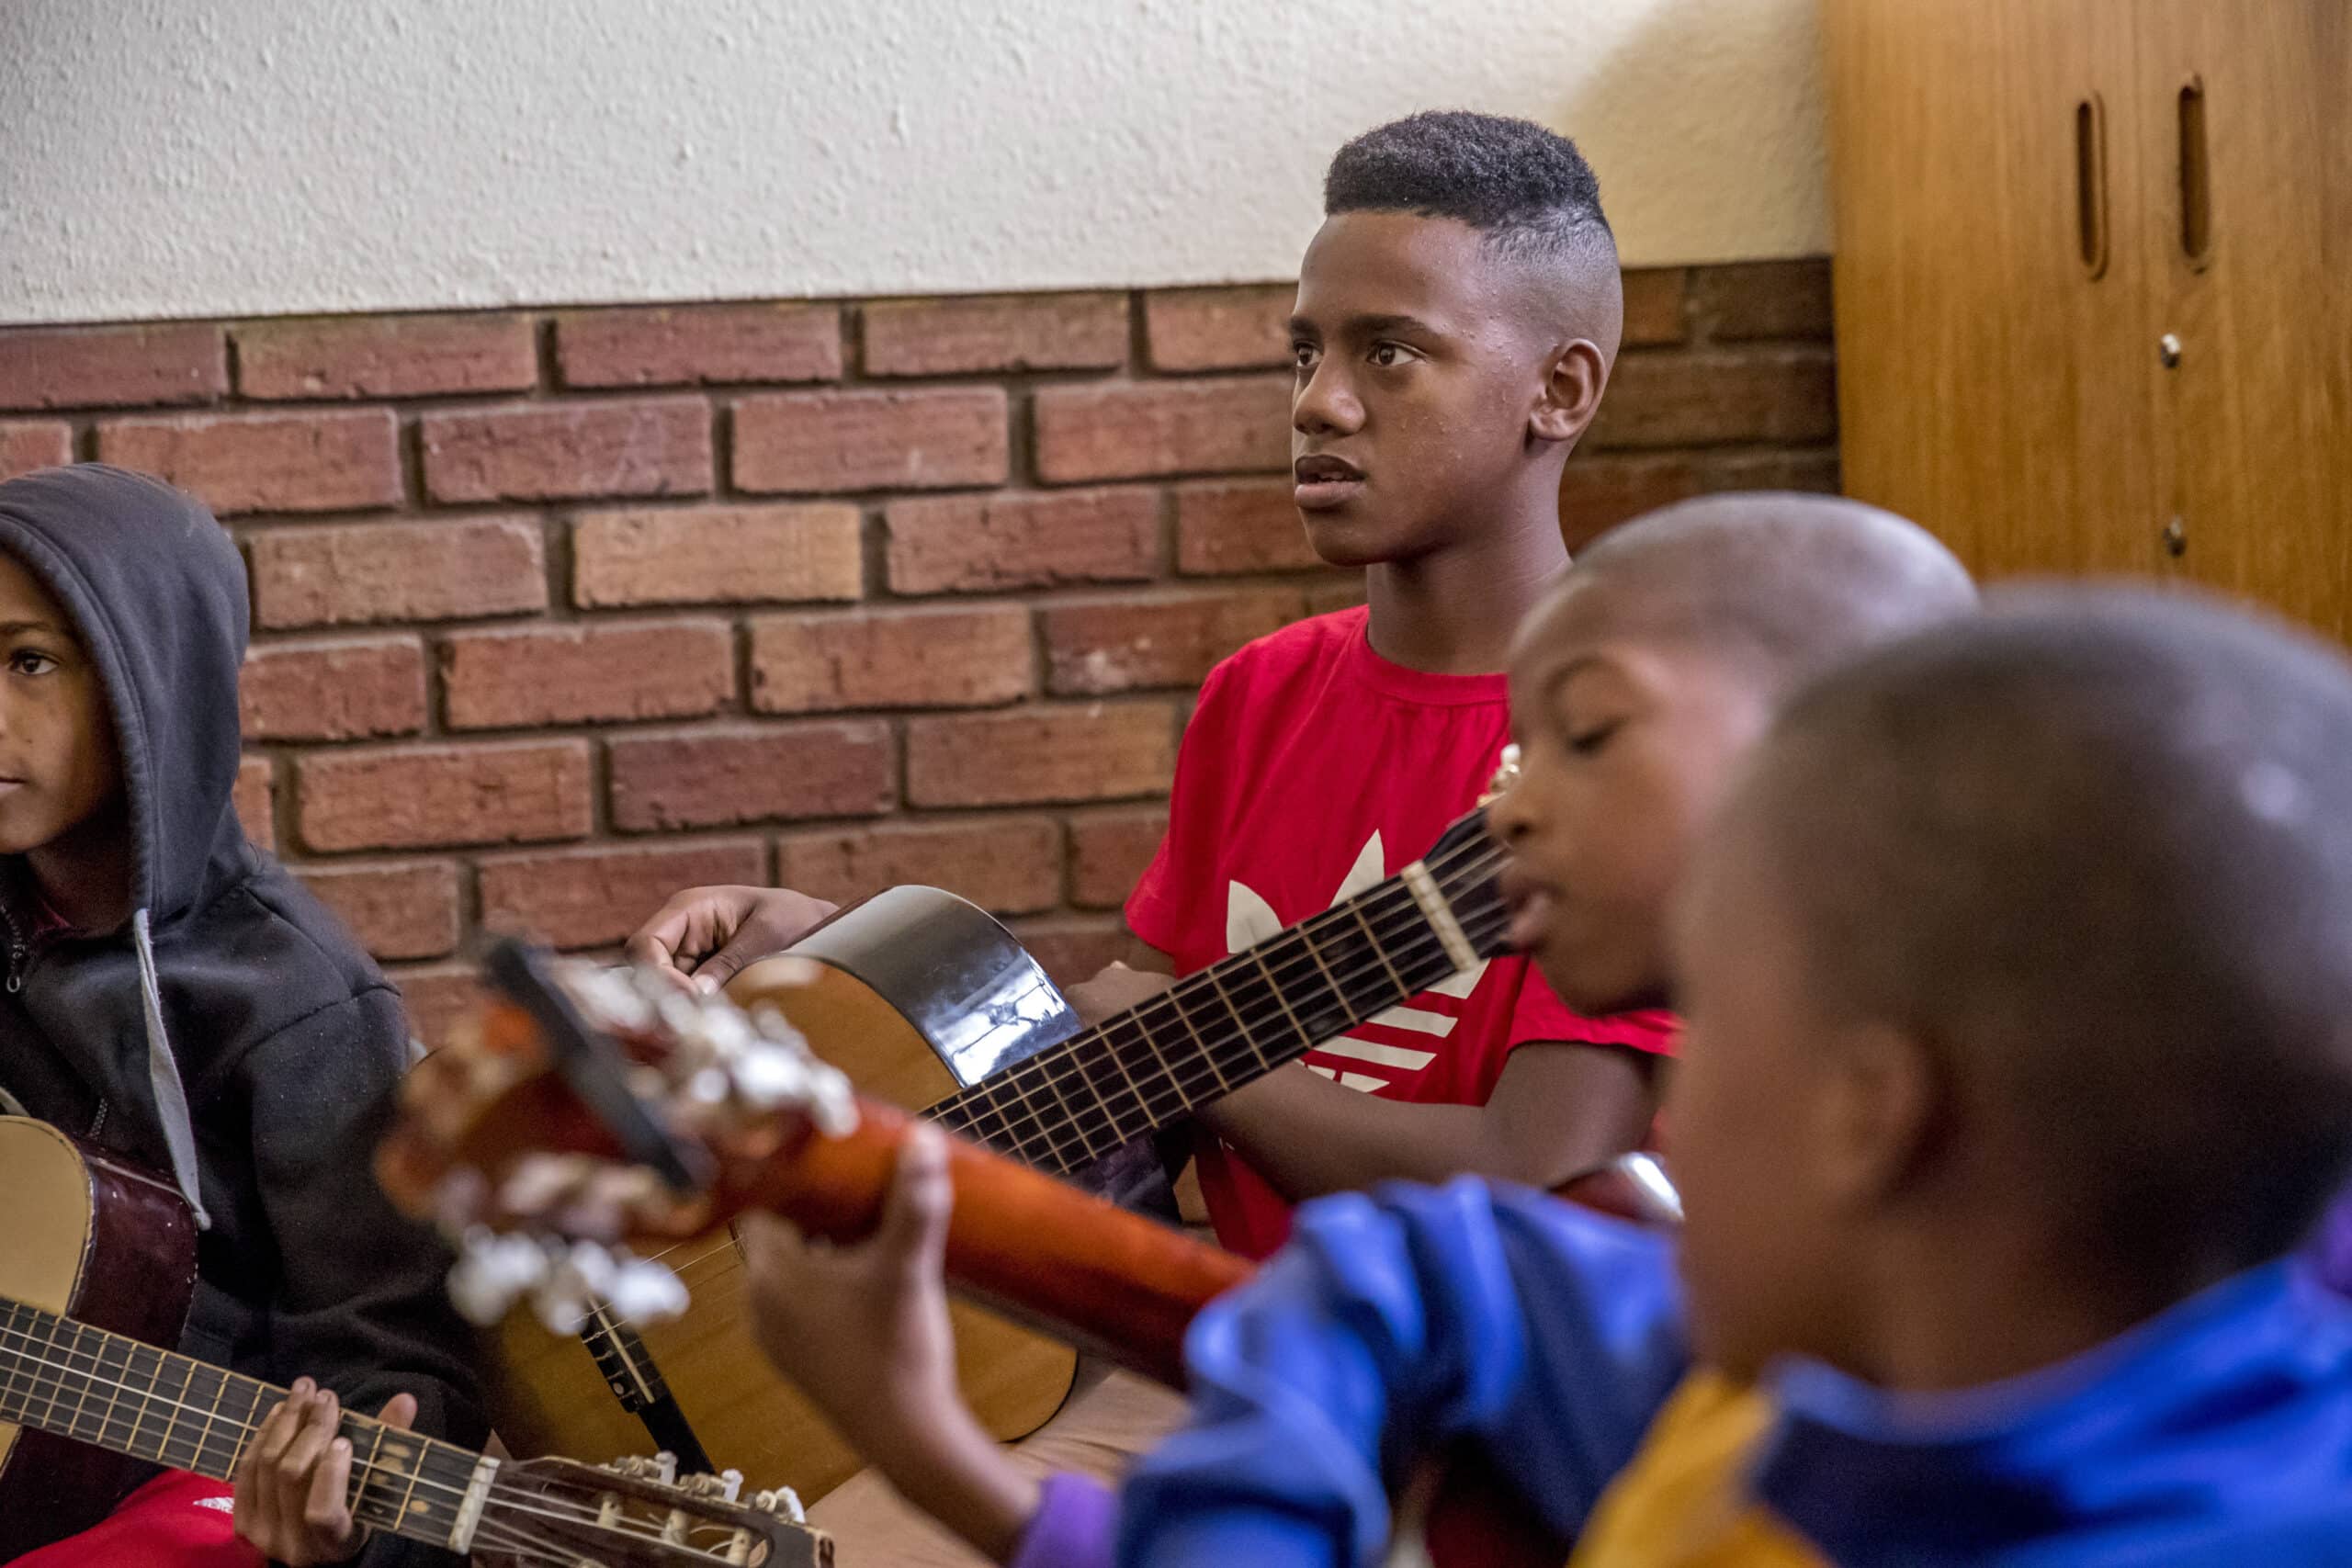 Ein Teenager im roten Hemd blickt nachdenklich zur Seite und hält eine Gitarre in der Hand. In einem Raum mit Backsteinwänden sind andere kleine Kinder um ihn herum, die ebenfalls Gitarre spielen. © Fotografie Tomas Rodriguez